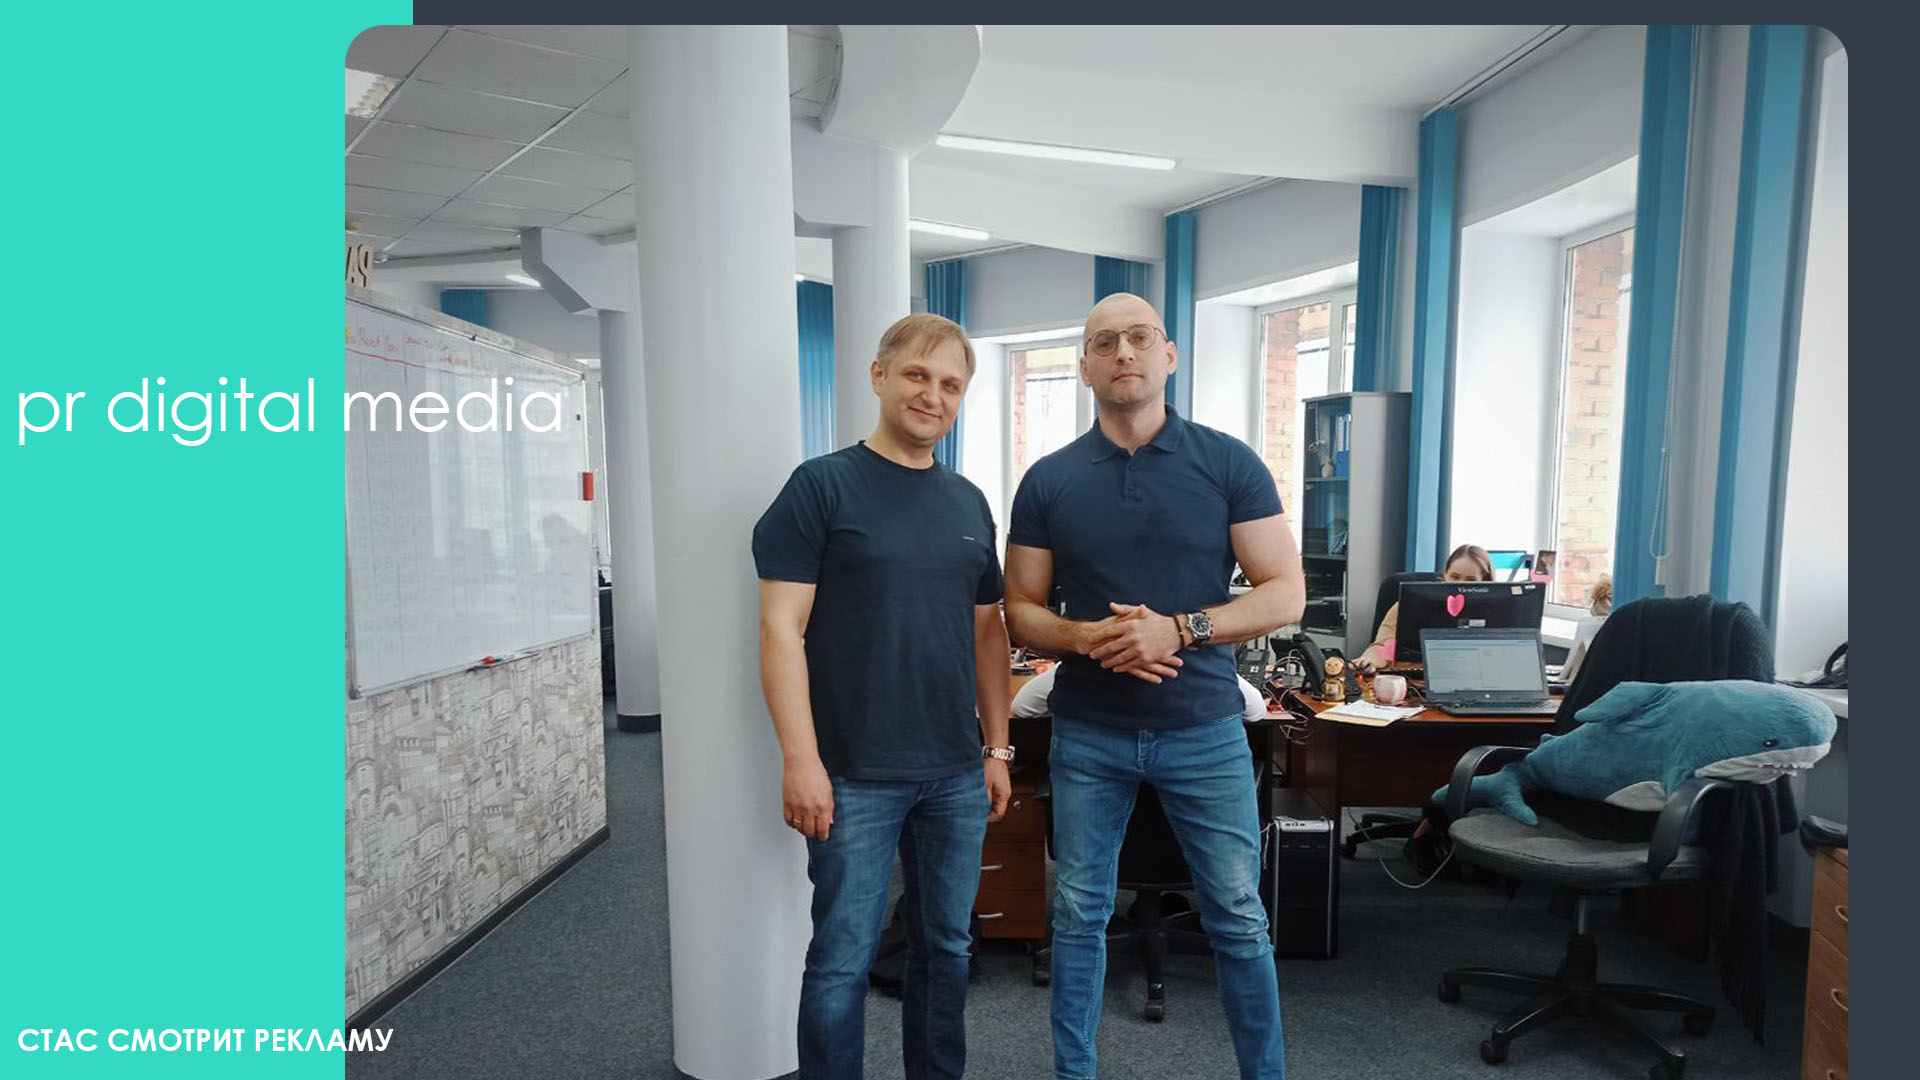 Слева - Антон Поцелуйко, управляющий партнер платформы ВашГород, руководитель издательства «Префикс». Справа - ваш покорный слуга  